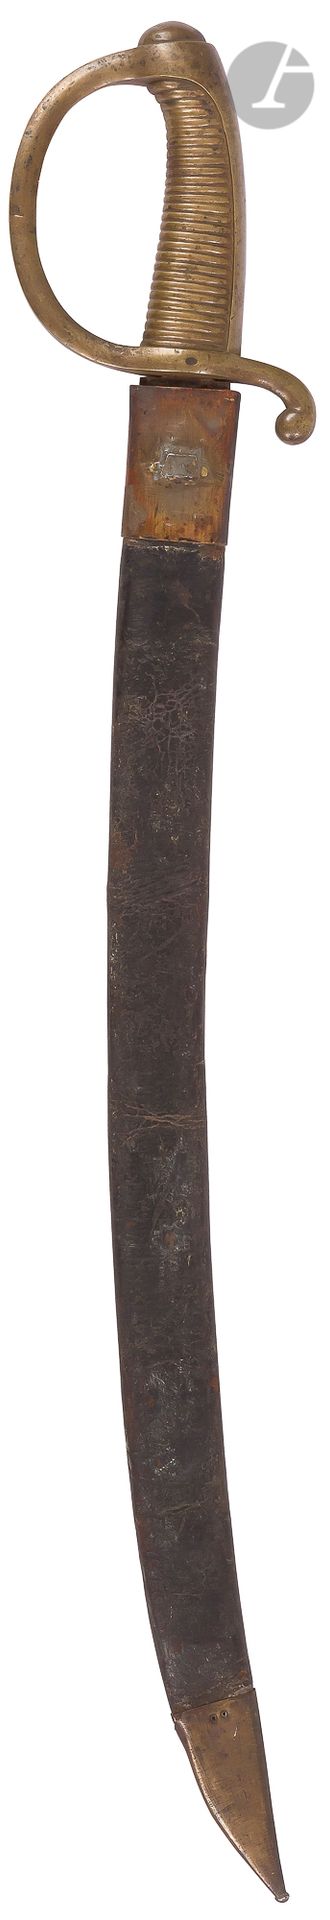 Null 步兵军刀称为打火机。
青铜安装。警卫与凡尔赛宫的树枝打成的。弯刀，平背，有 "1815 "的残余标记，盖有印章。
皮制刀鞘，有两个铜质配件（缺少帽扣）&hellip;